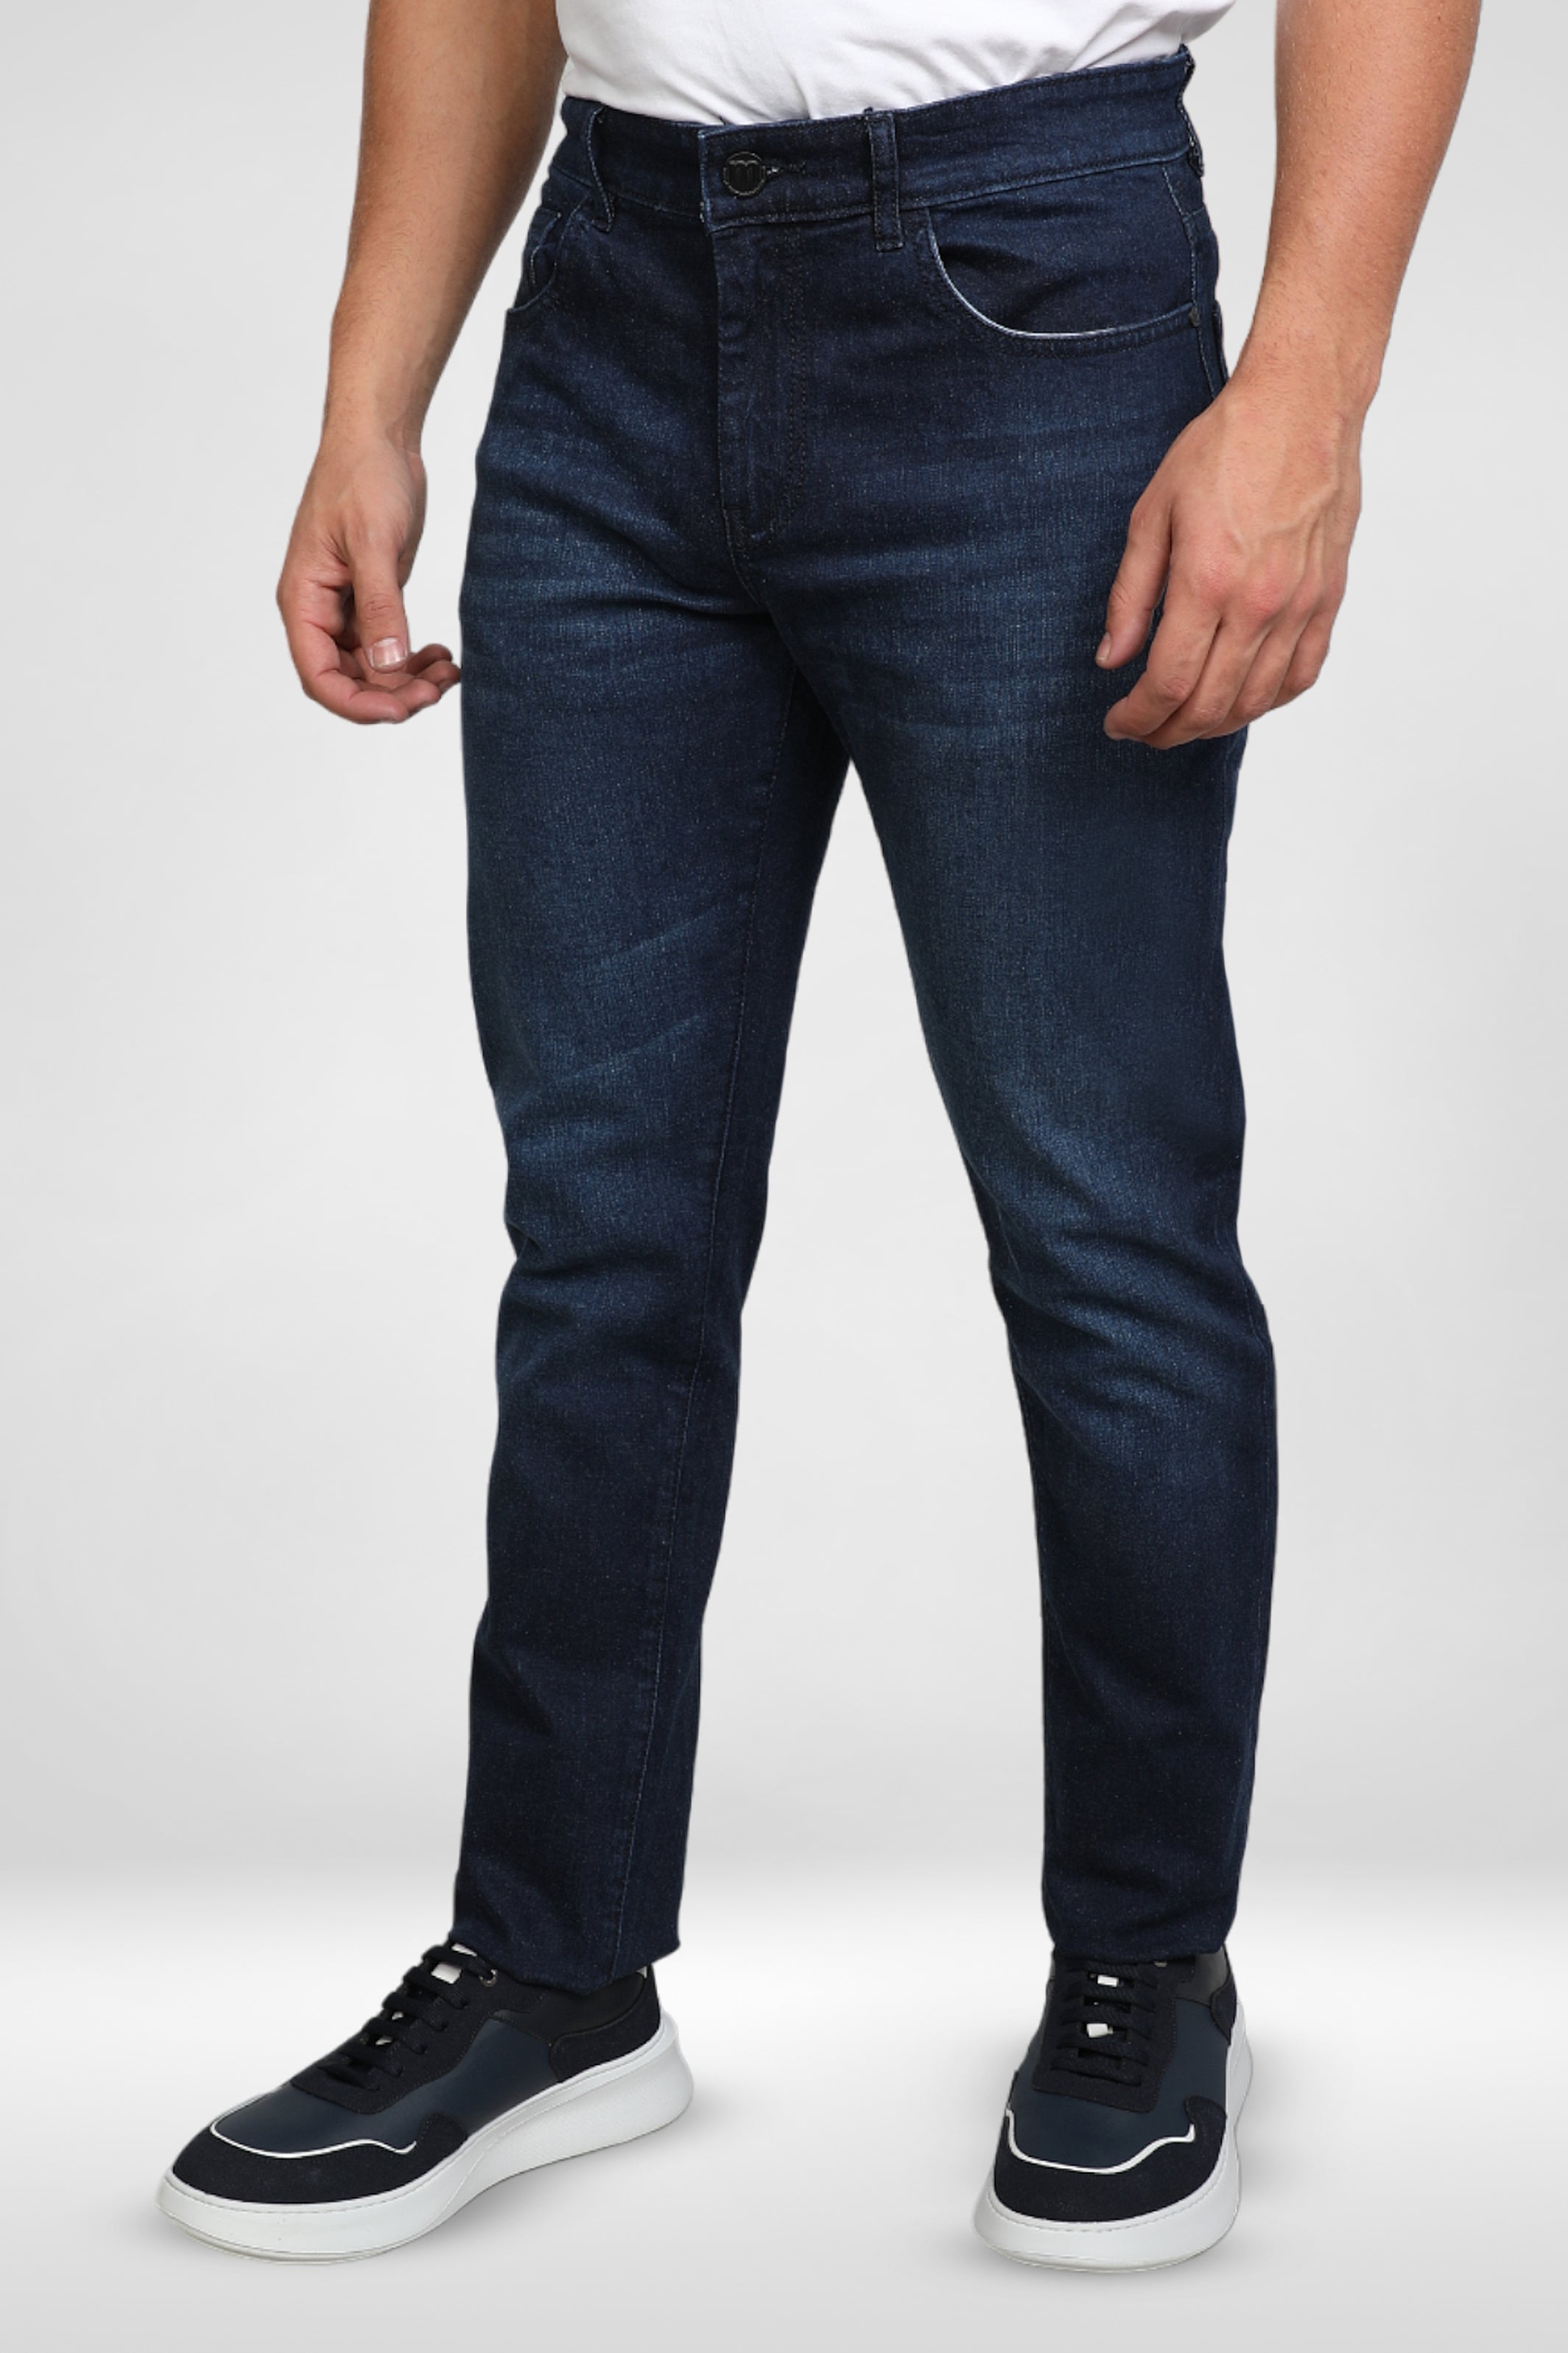 Straight Slim Selvedge Jeans - Dark blue - Men